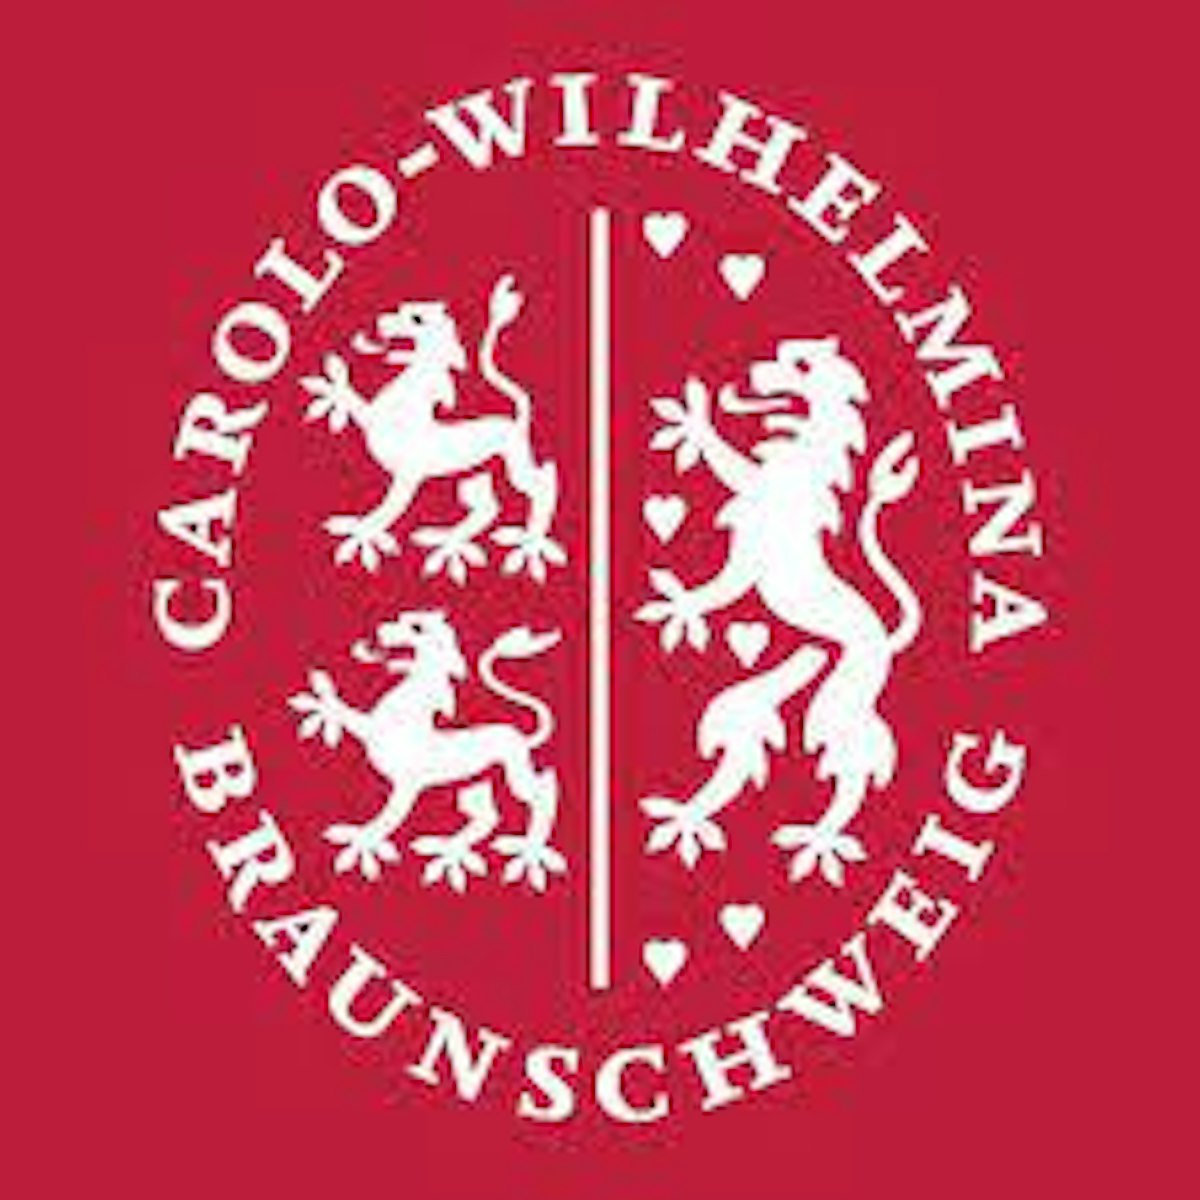 Technische Universität Braunschweig logo